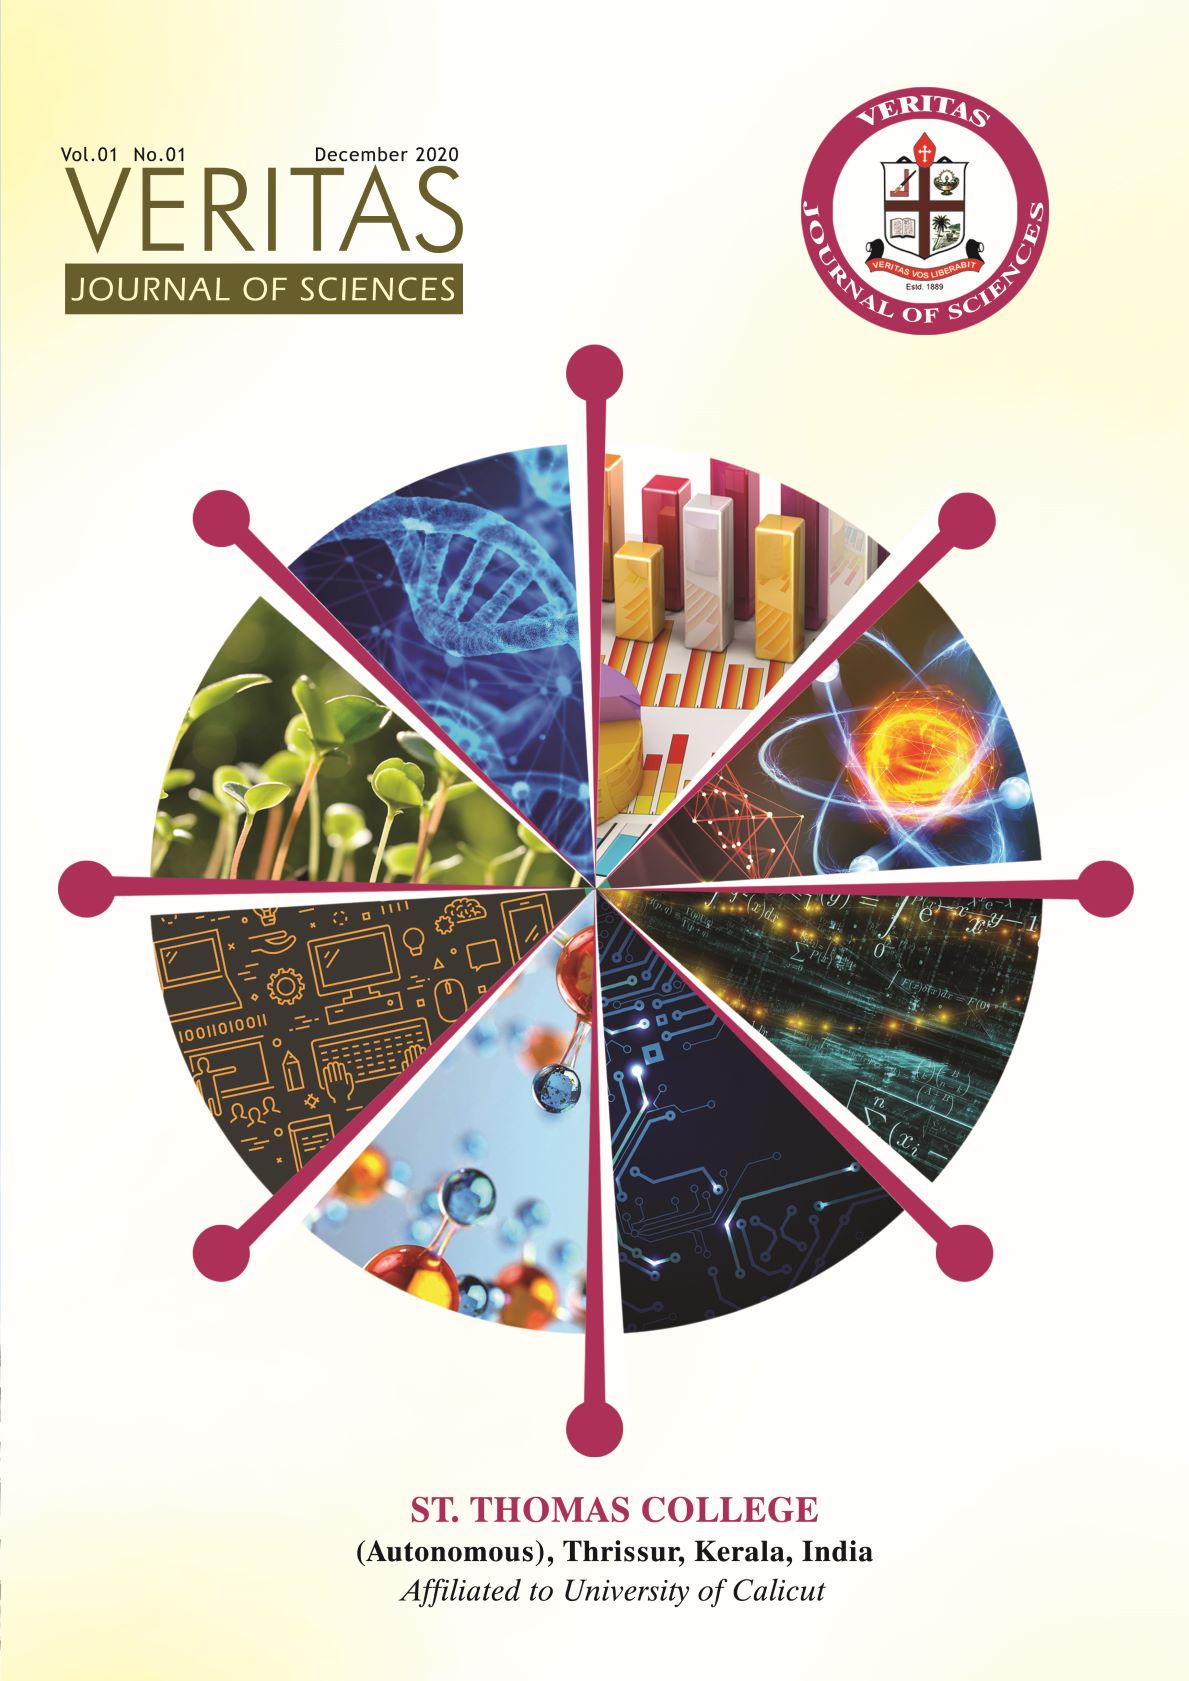 Veritas Journal of Sciences